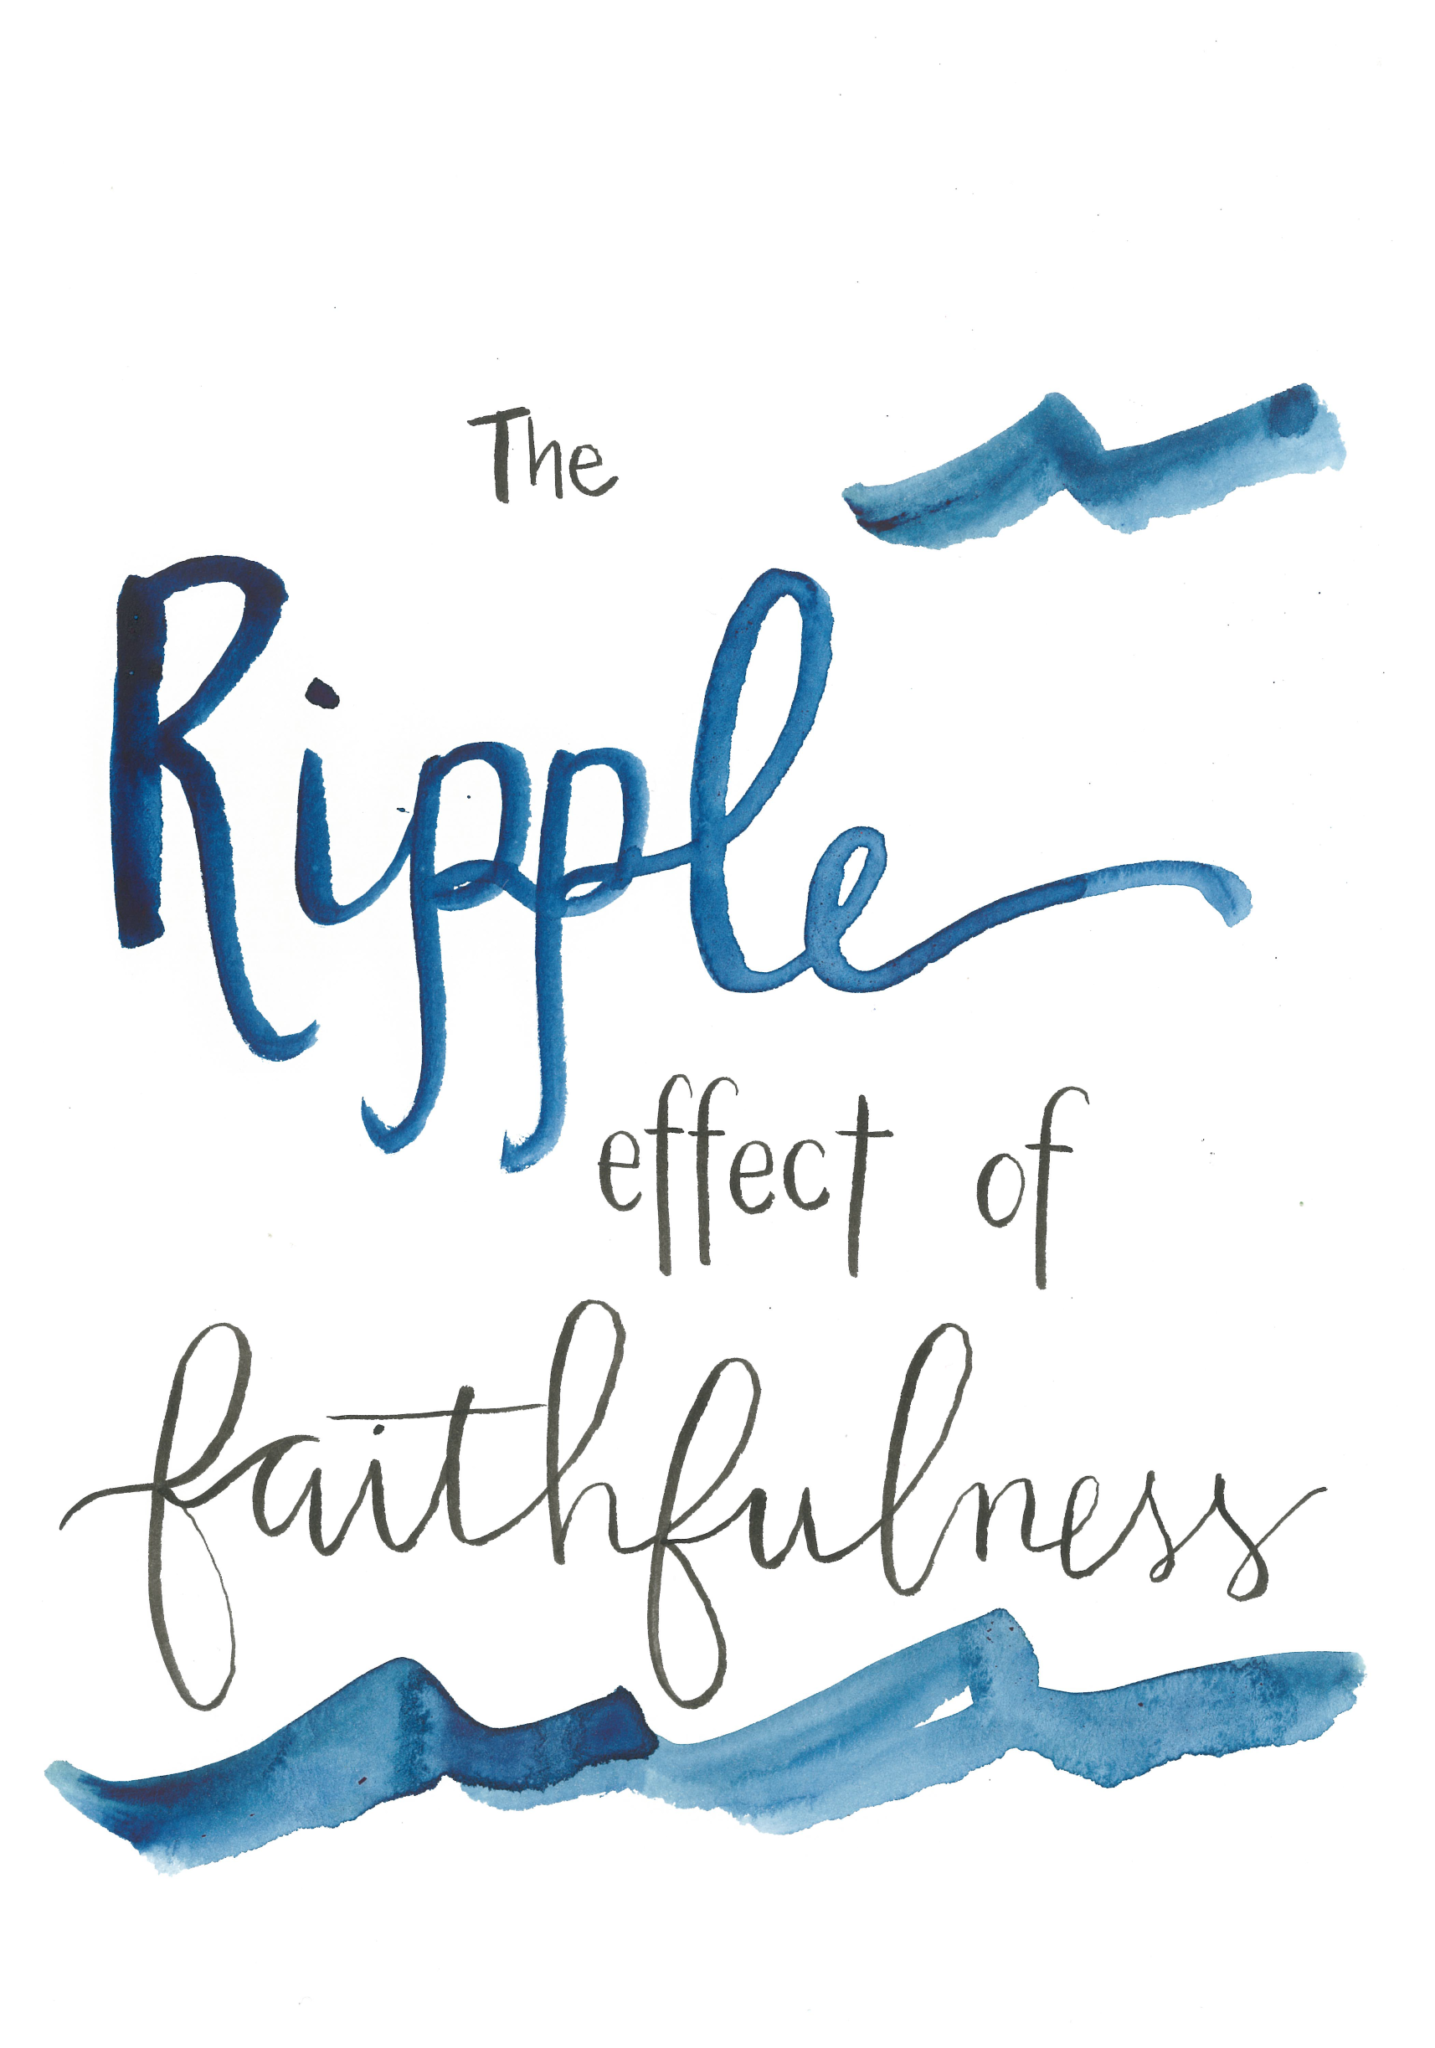 "The ripple effect of faithfulness" word art to represent the faith of Tabitha / Dorcas